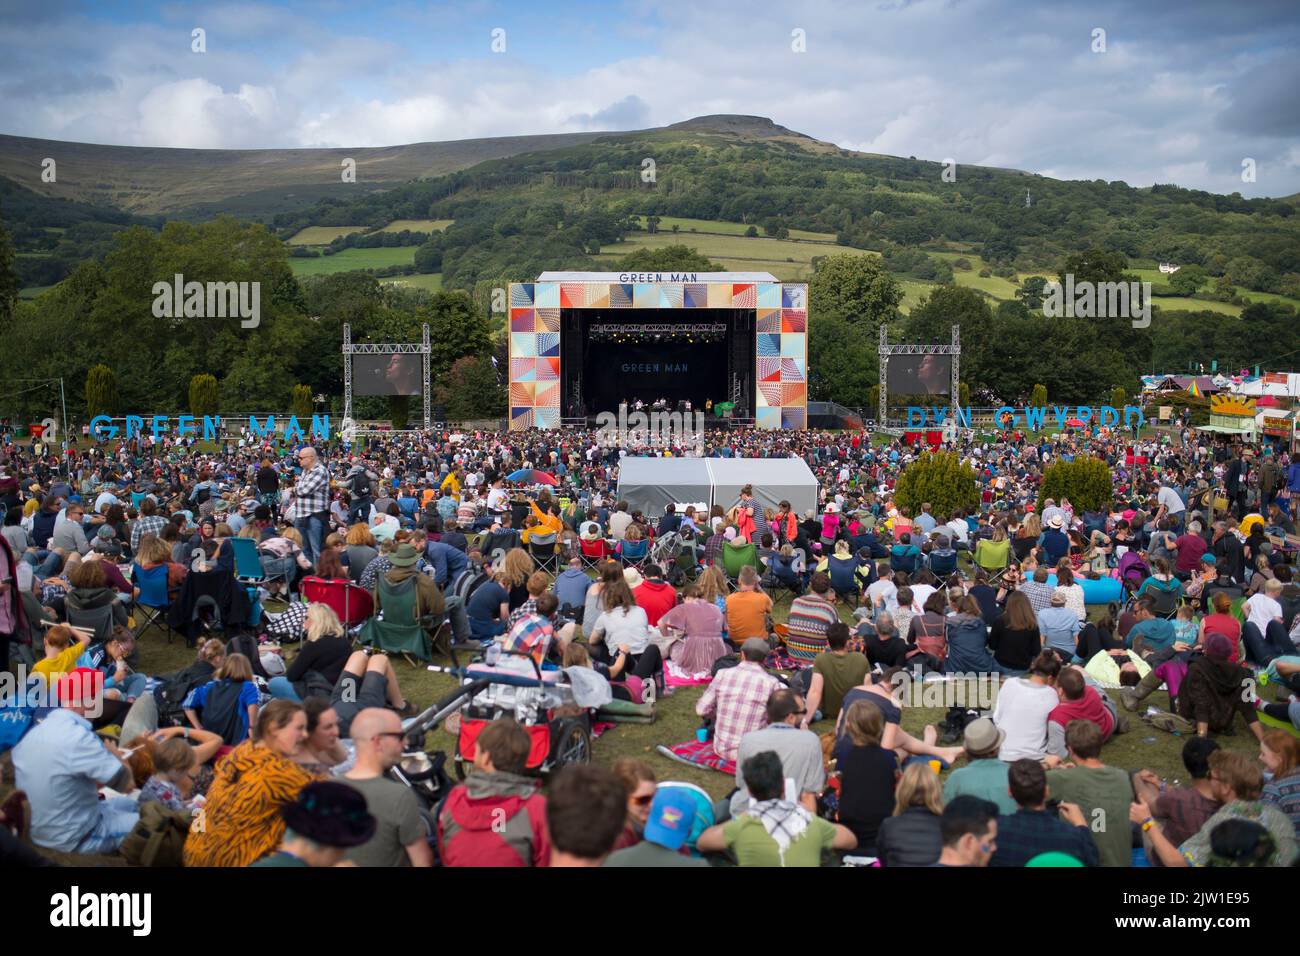 Ein allgemeiner Blick auf die Hauptbühne beim Green man Festival in Crickhowell, Wales, Vereinigtes Königreich. Stockfoto